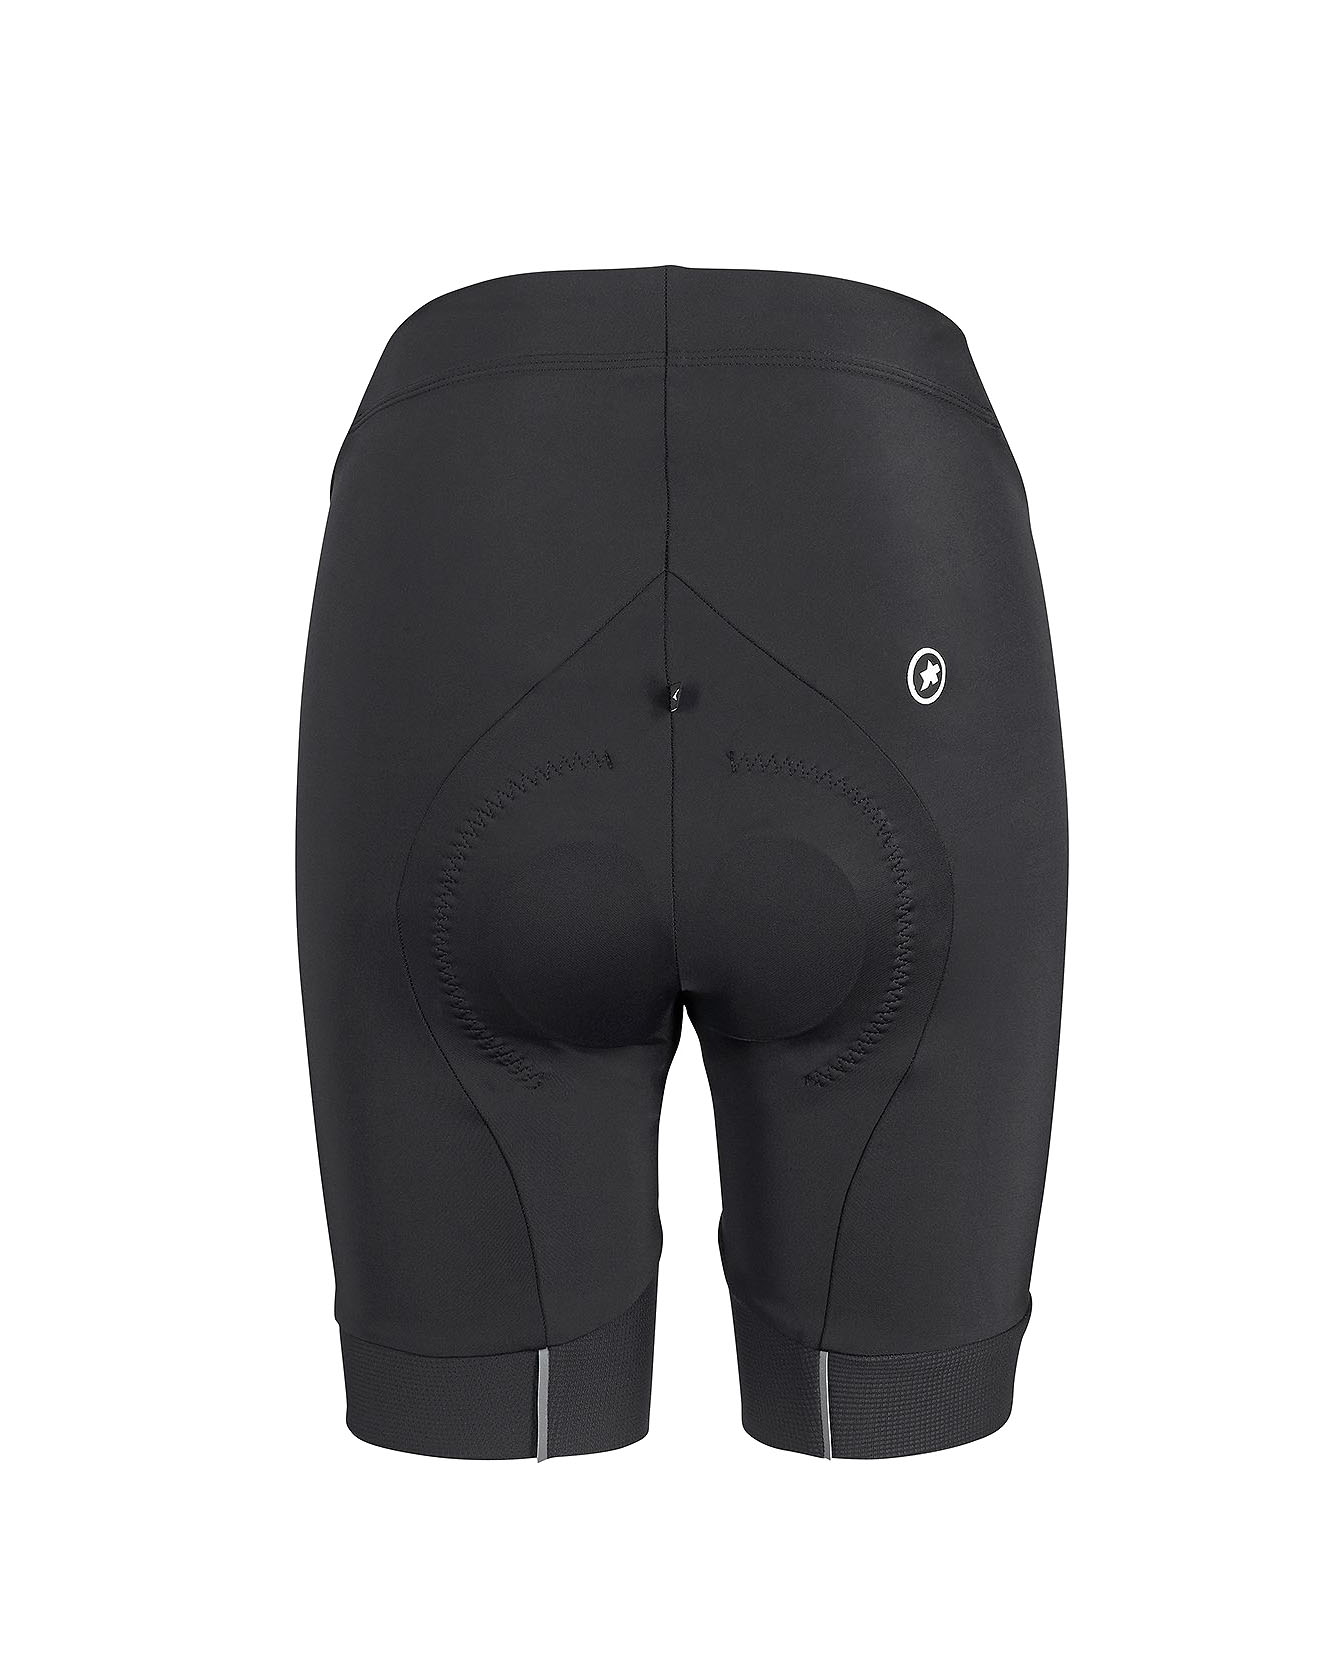 Велотруси ASSOS Uma GT Half Shorts Evo, жіночі, чорні з білим логотипом, M фото 2